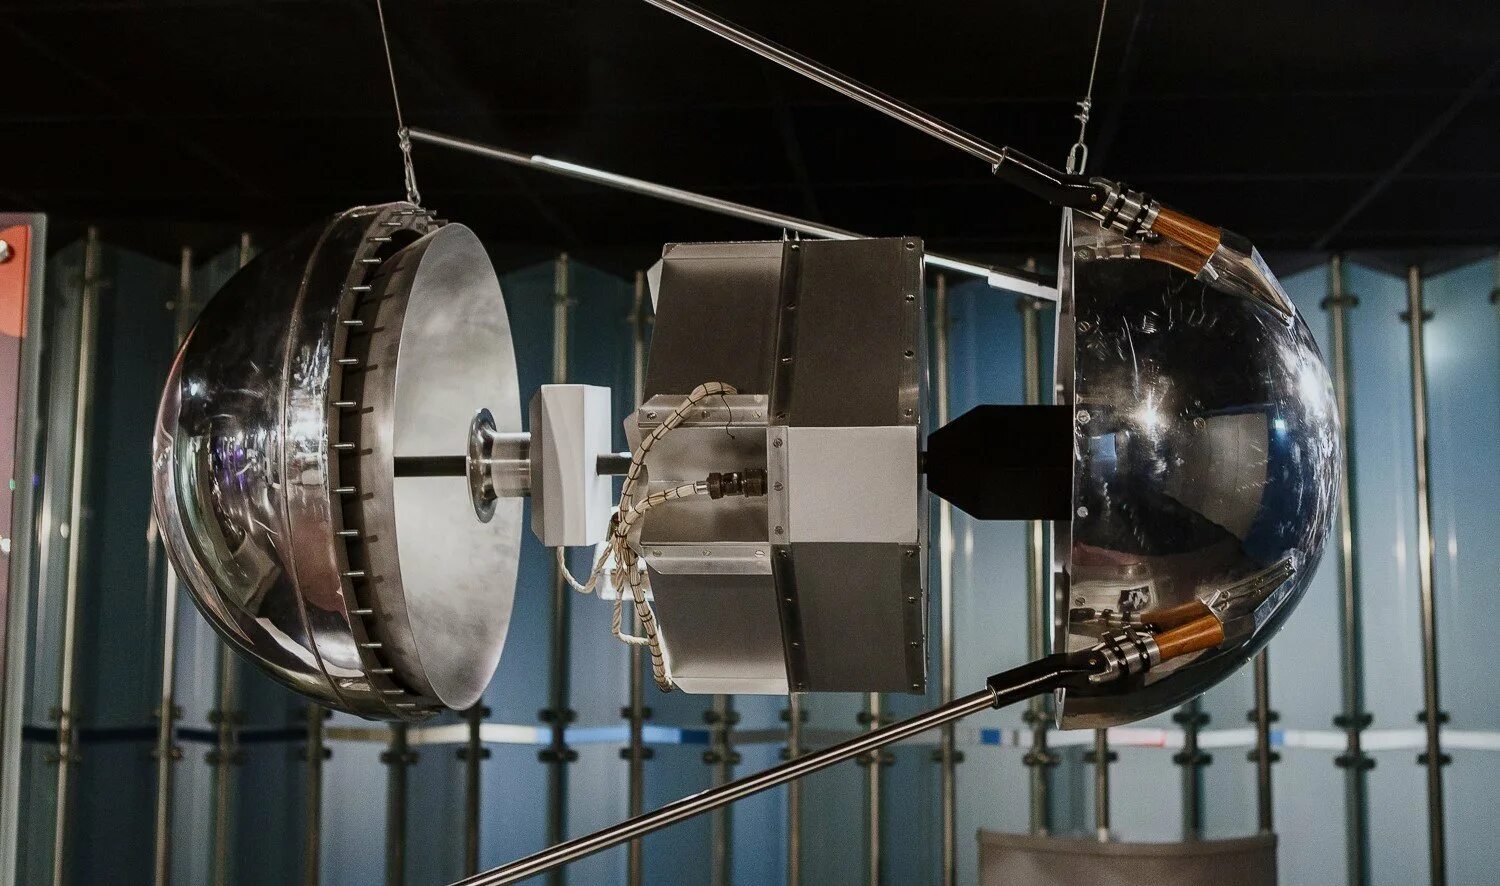 Спутник 1 первый искусственный Спутник земли. Первый Спутник 1957. ПС-1 Спутник. Первый ИСЗ "Спутник".